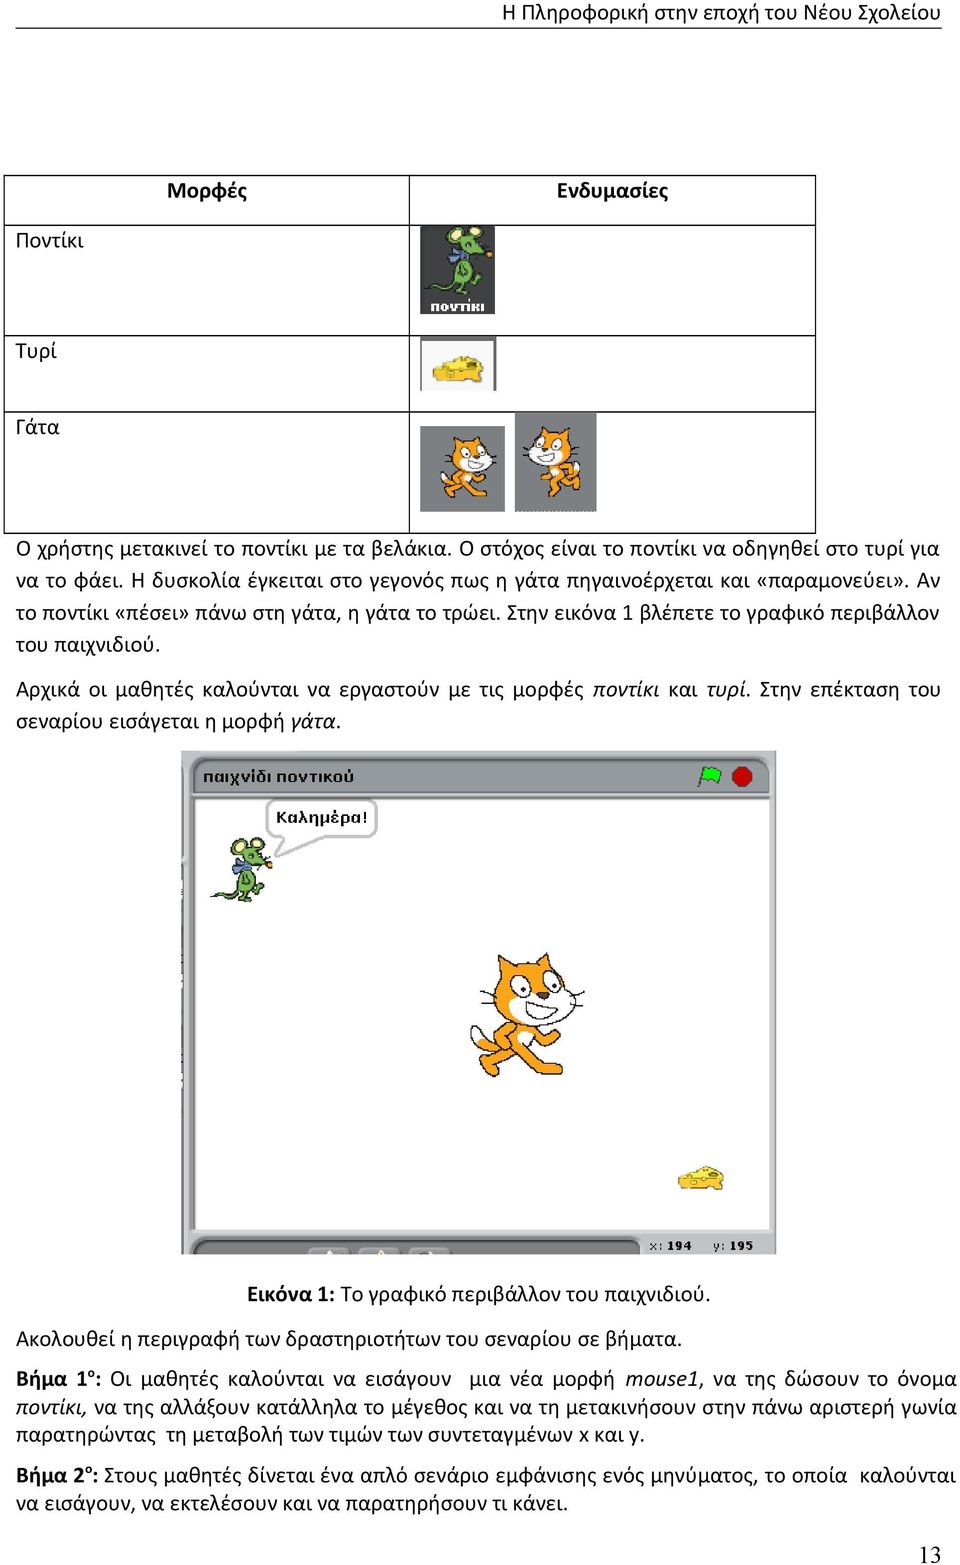 Αρχικά οι μαθητές καλούνται να εργαστούν με τις μορφές ποντίκι και τυρί. Στην επέκταση του σεναρίου εισάγεται η μορφή γάτα. Εικόνα 1: Το γραφικό περιβάλλον του παιχνιδιού.